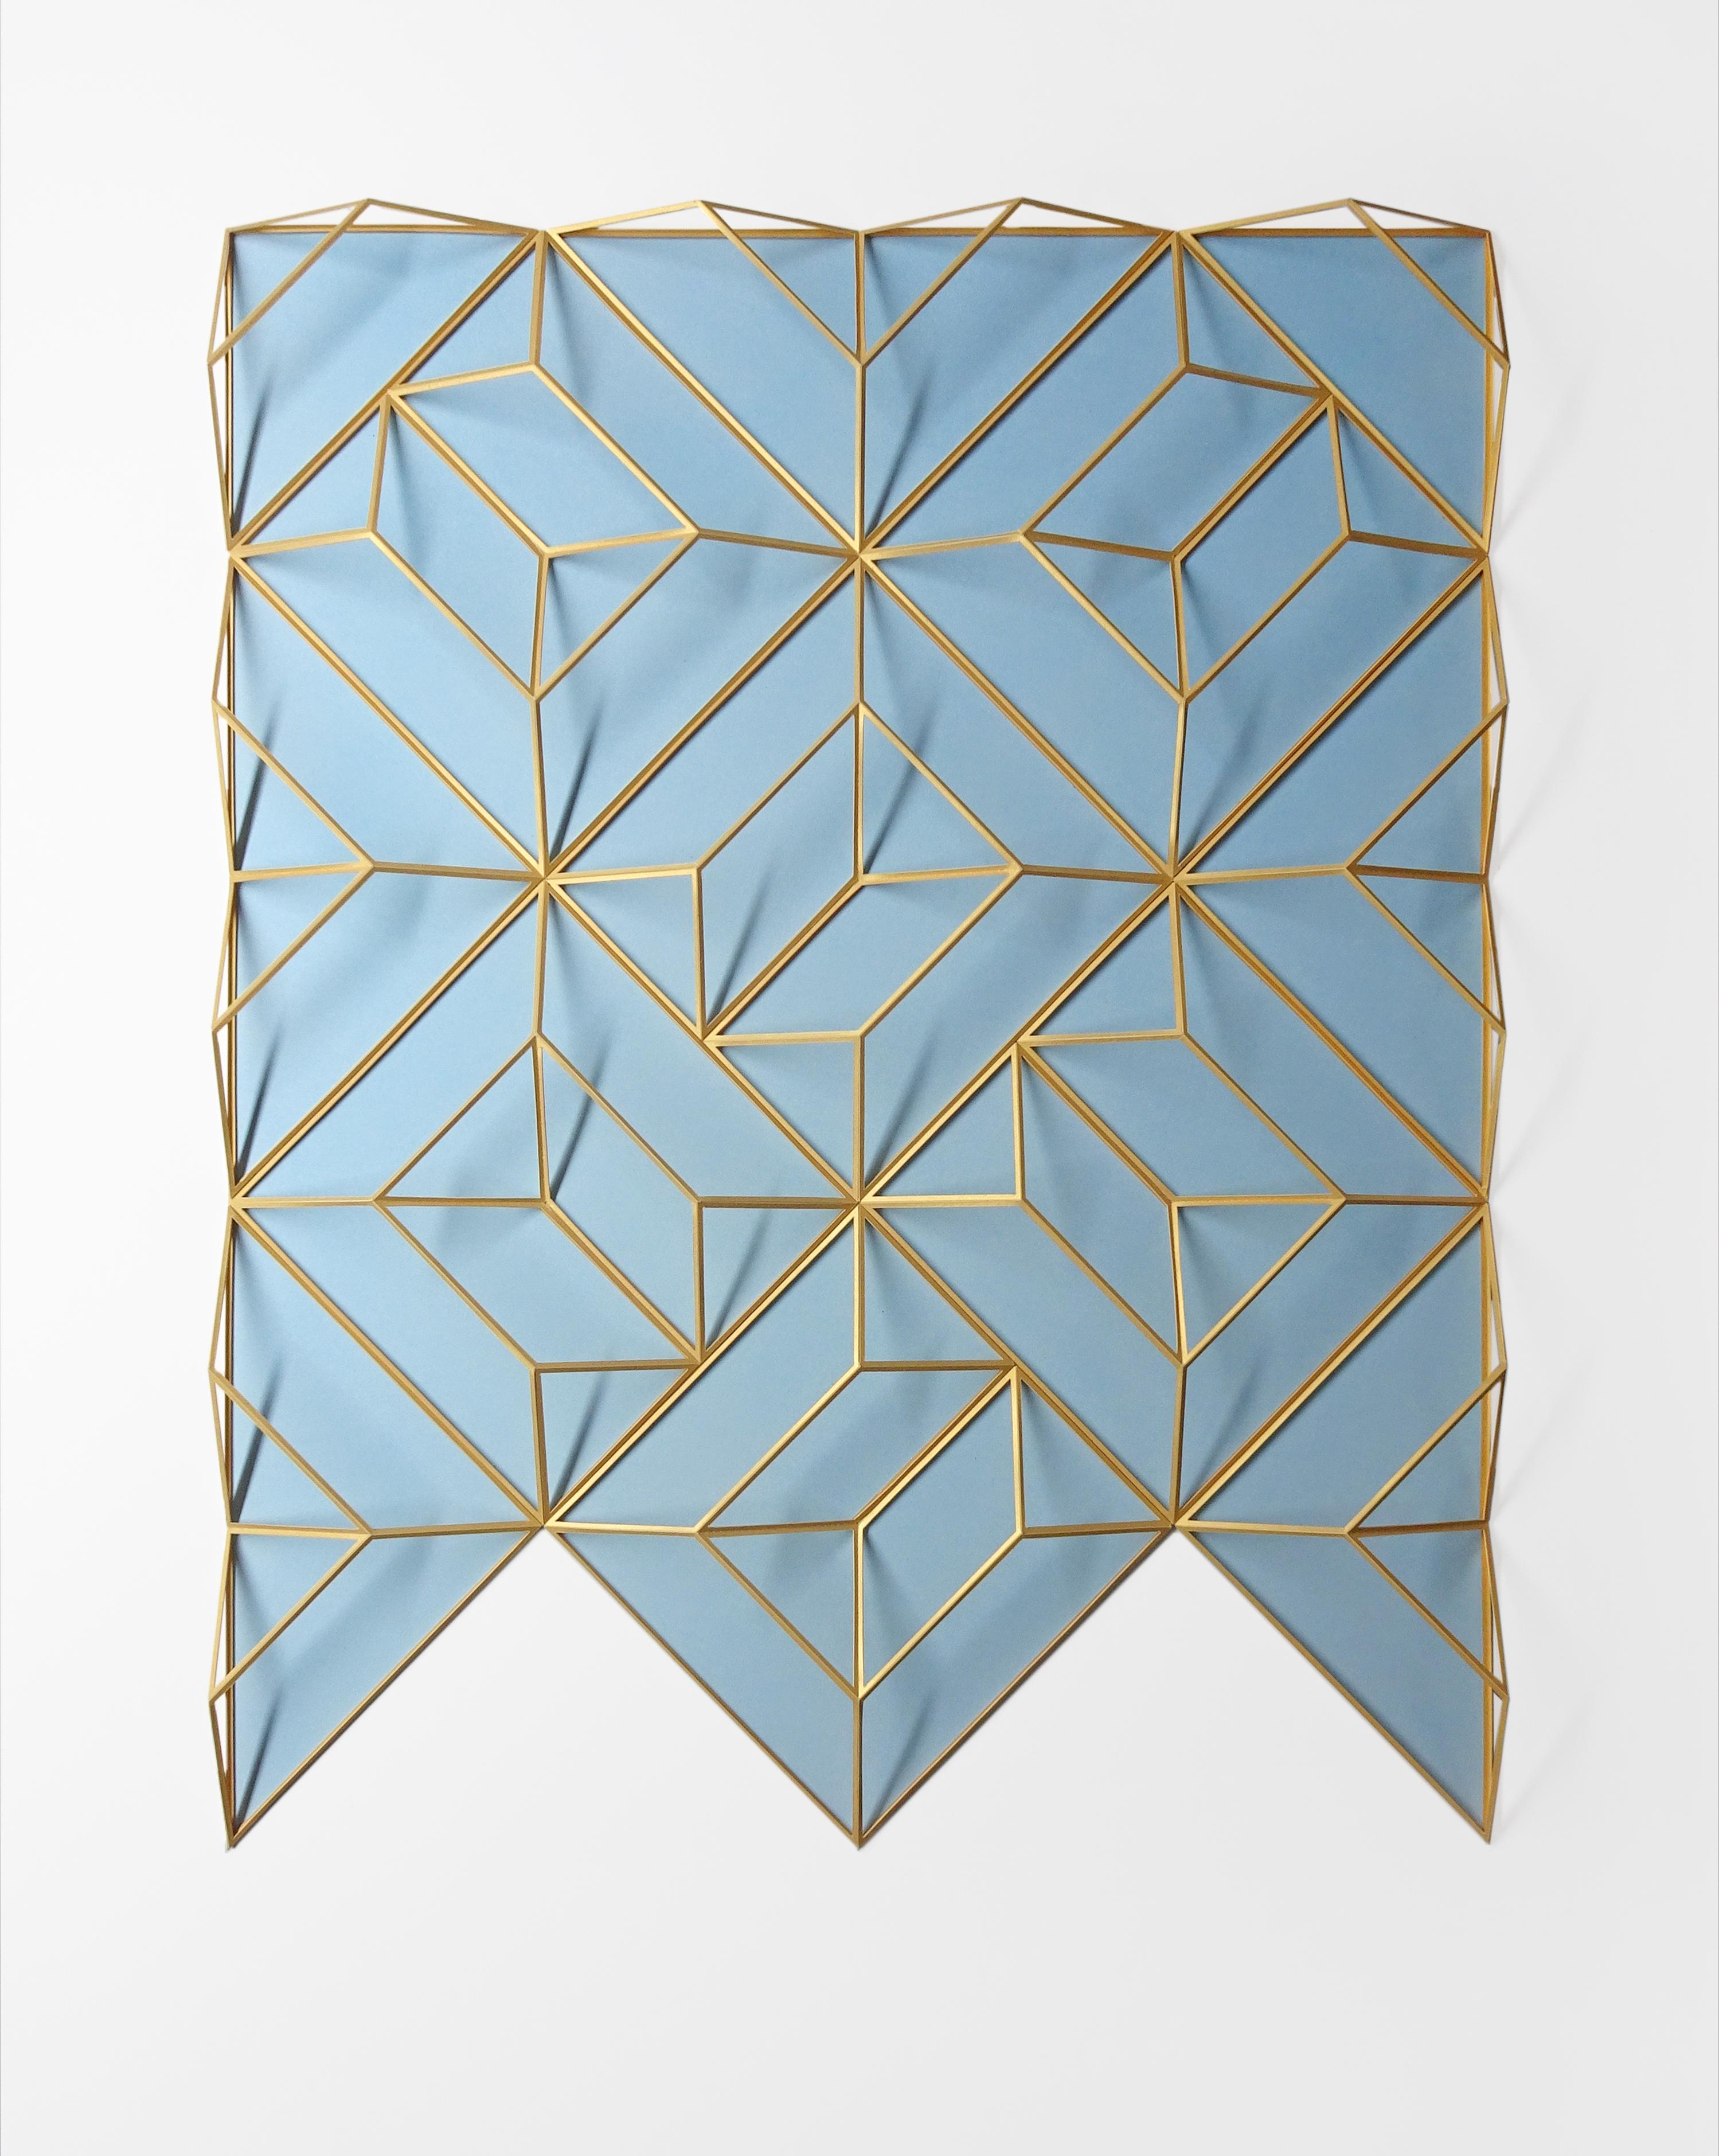 Sculpture en papier abstraite contemporaine SCSC 38 Gold Blue 2, 2021